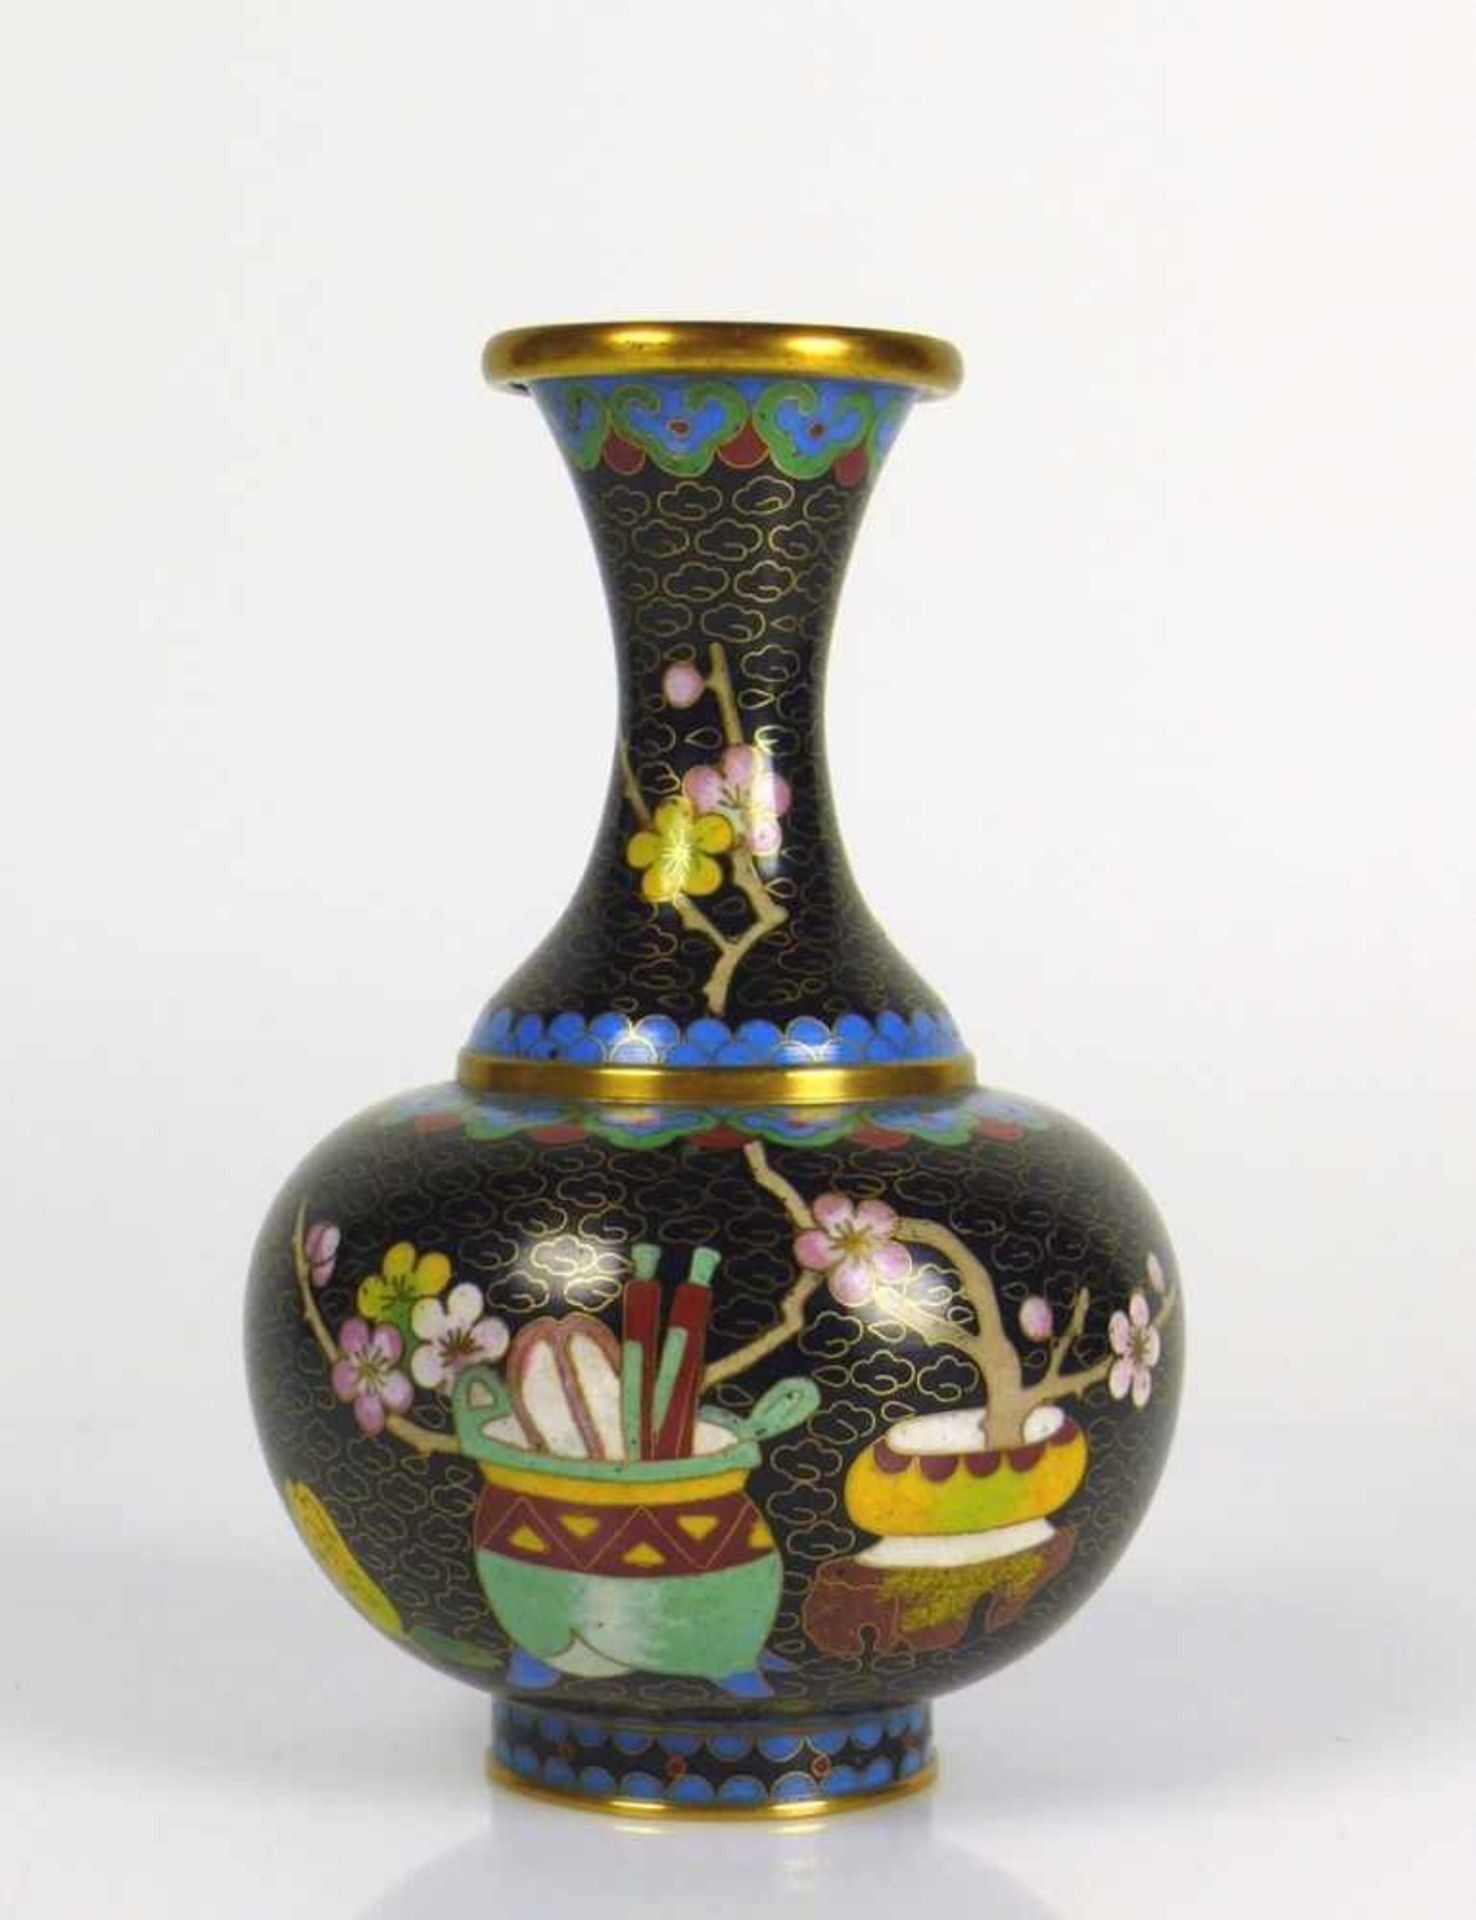 Cloisonné-Vase auf schwarzem Grund Floraldekor; gebauchter Korpus; taillierter Hals; H: 15 cm